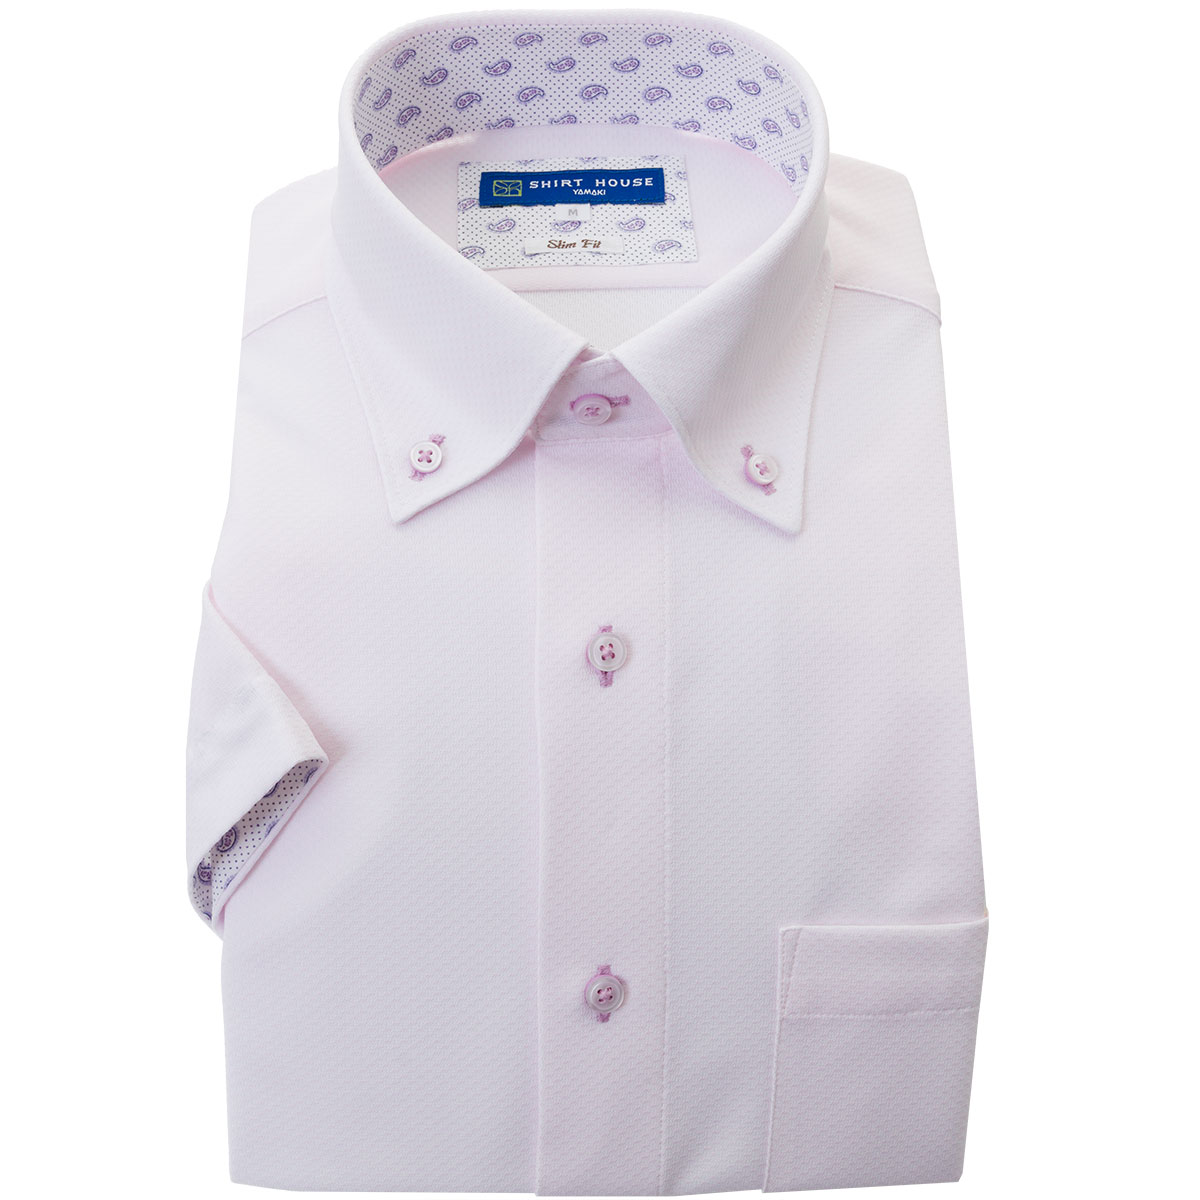 SHIRT HOUSE・ブルーレーベル 半袖スリムフィット ニットシャツ(裄詰不可)ボタンダウン ピンク ワイシャツ